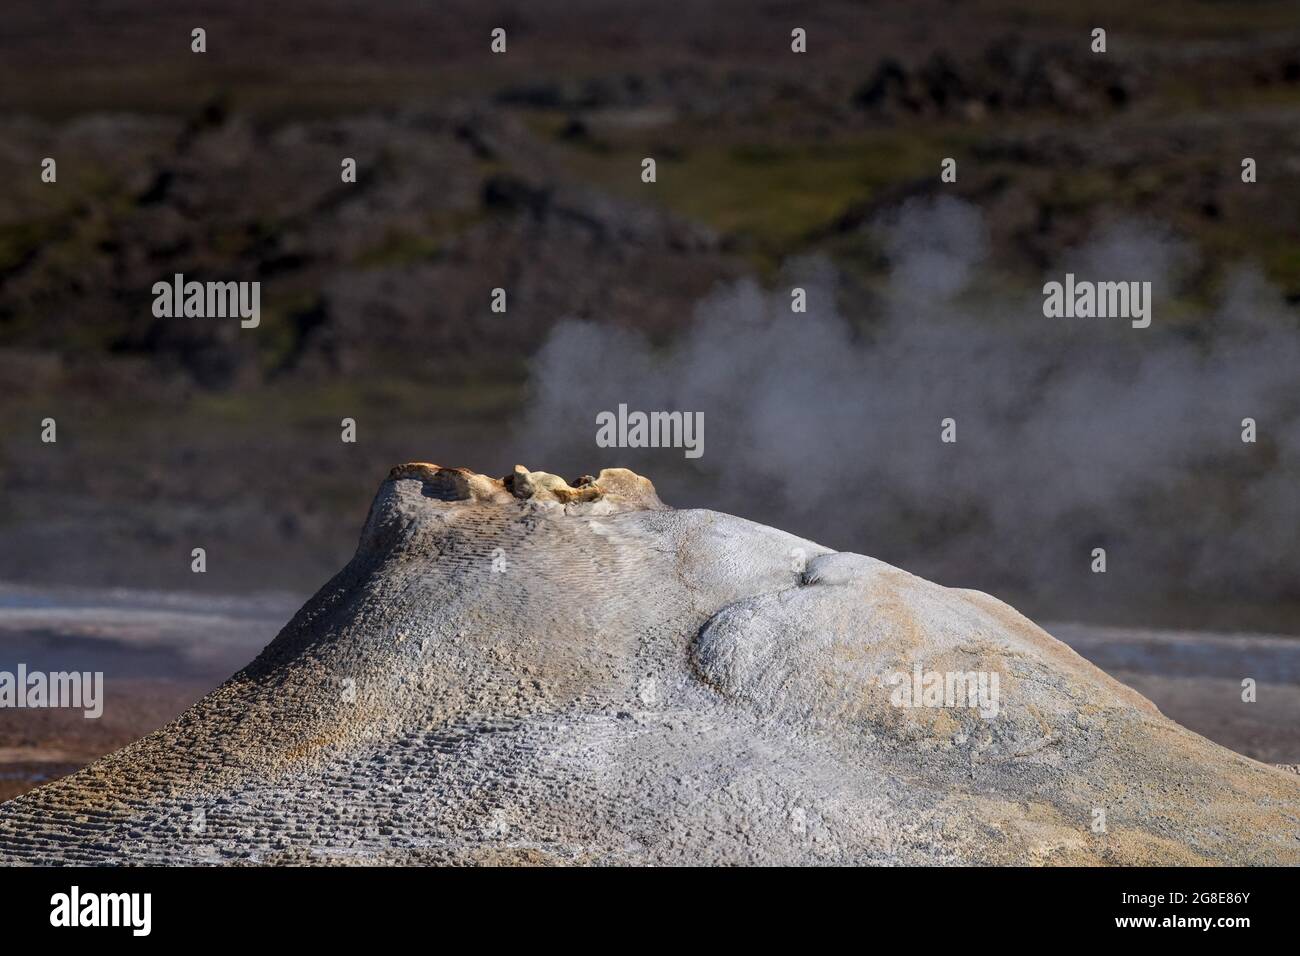 Source chaude à la vapeur Oeskjuhoell ou Oeskurholhver, zone à haute température ou zone géothermique Hveravellir, Kjoelur, Highlands, Islande Banque D'Images